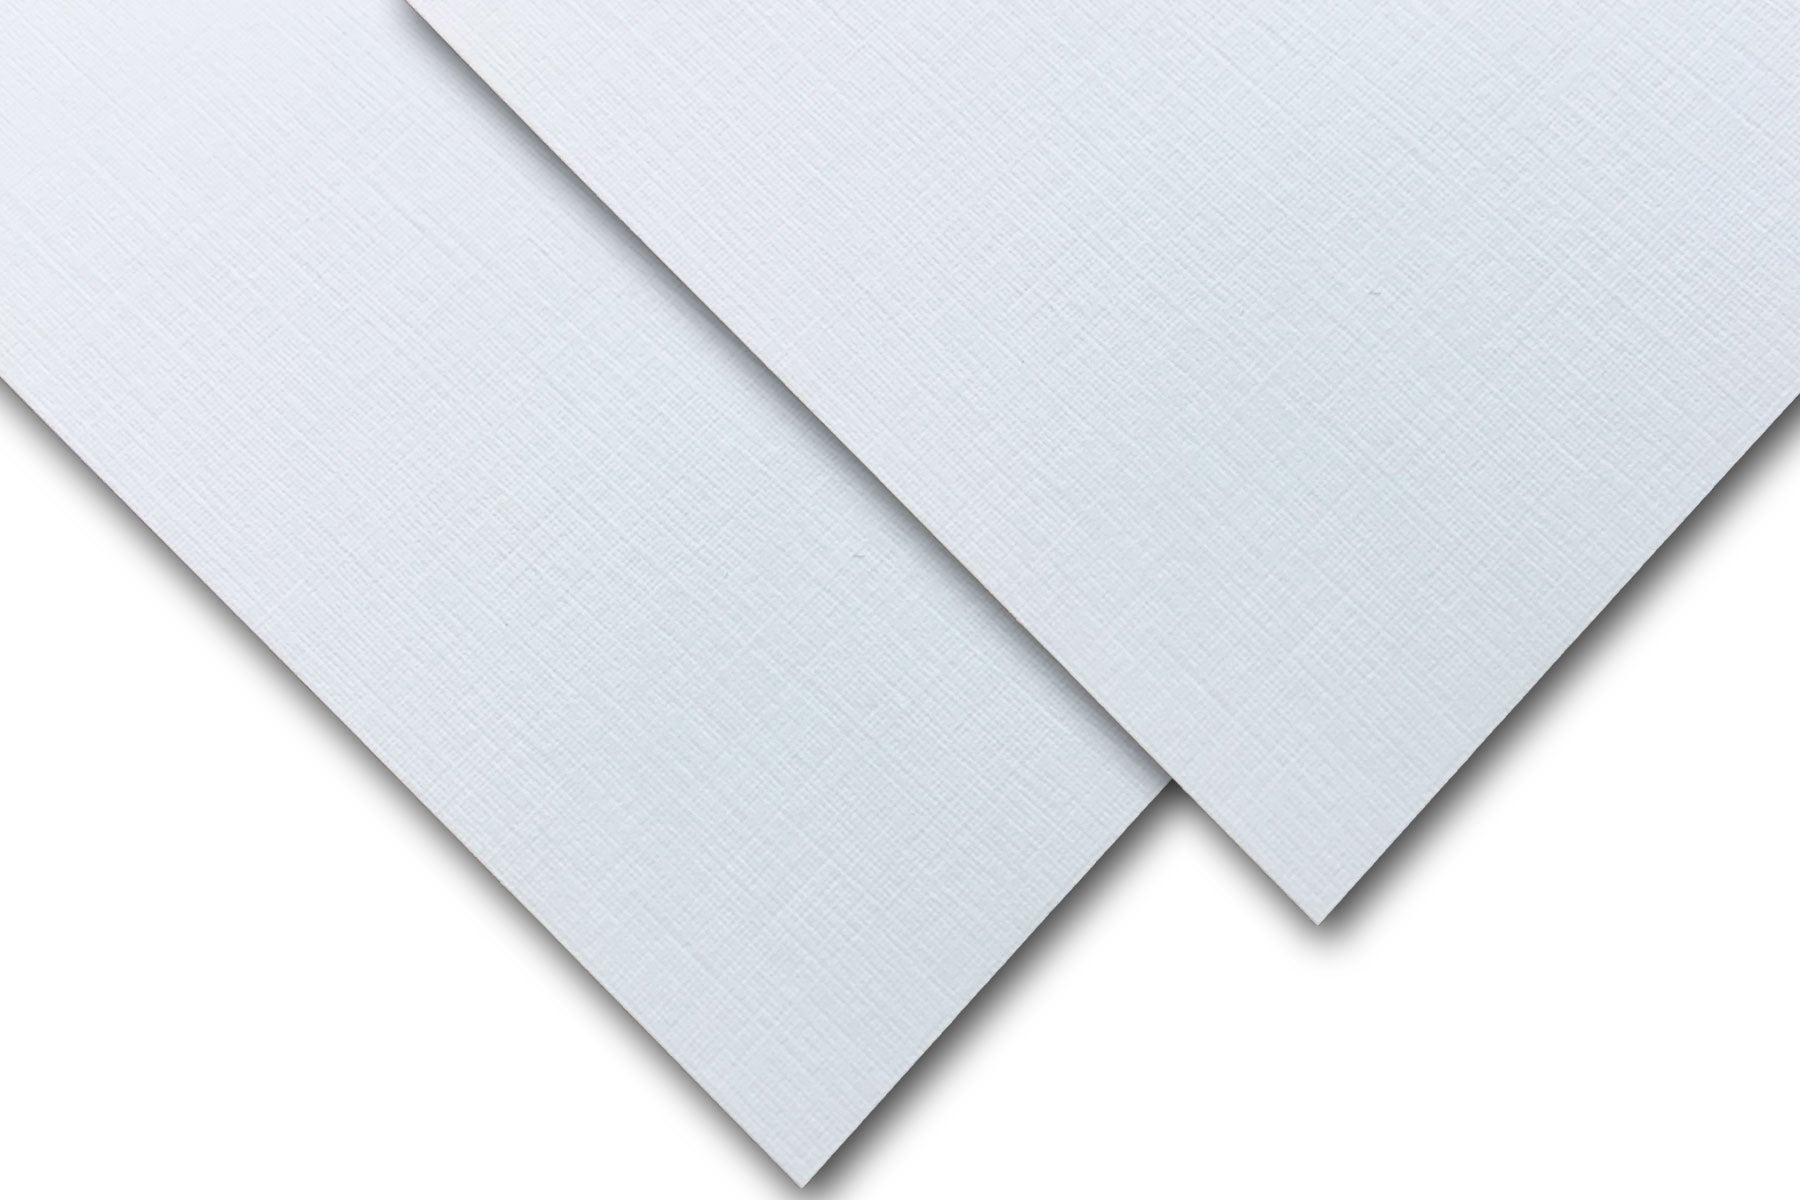 Loop Linen 11 x 17 80 Textures Linen Cardstock 250 Sheets/Pkg. Gray, Multipurpose Copy Paper